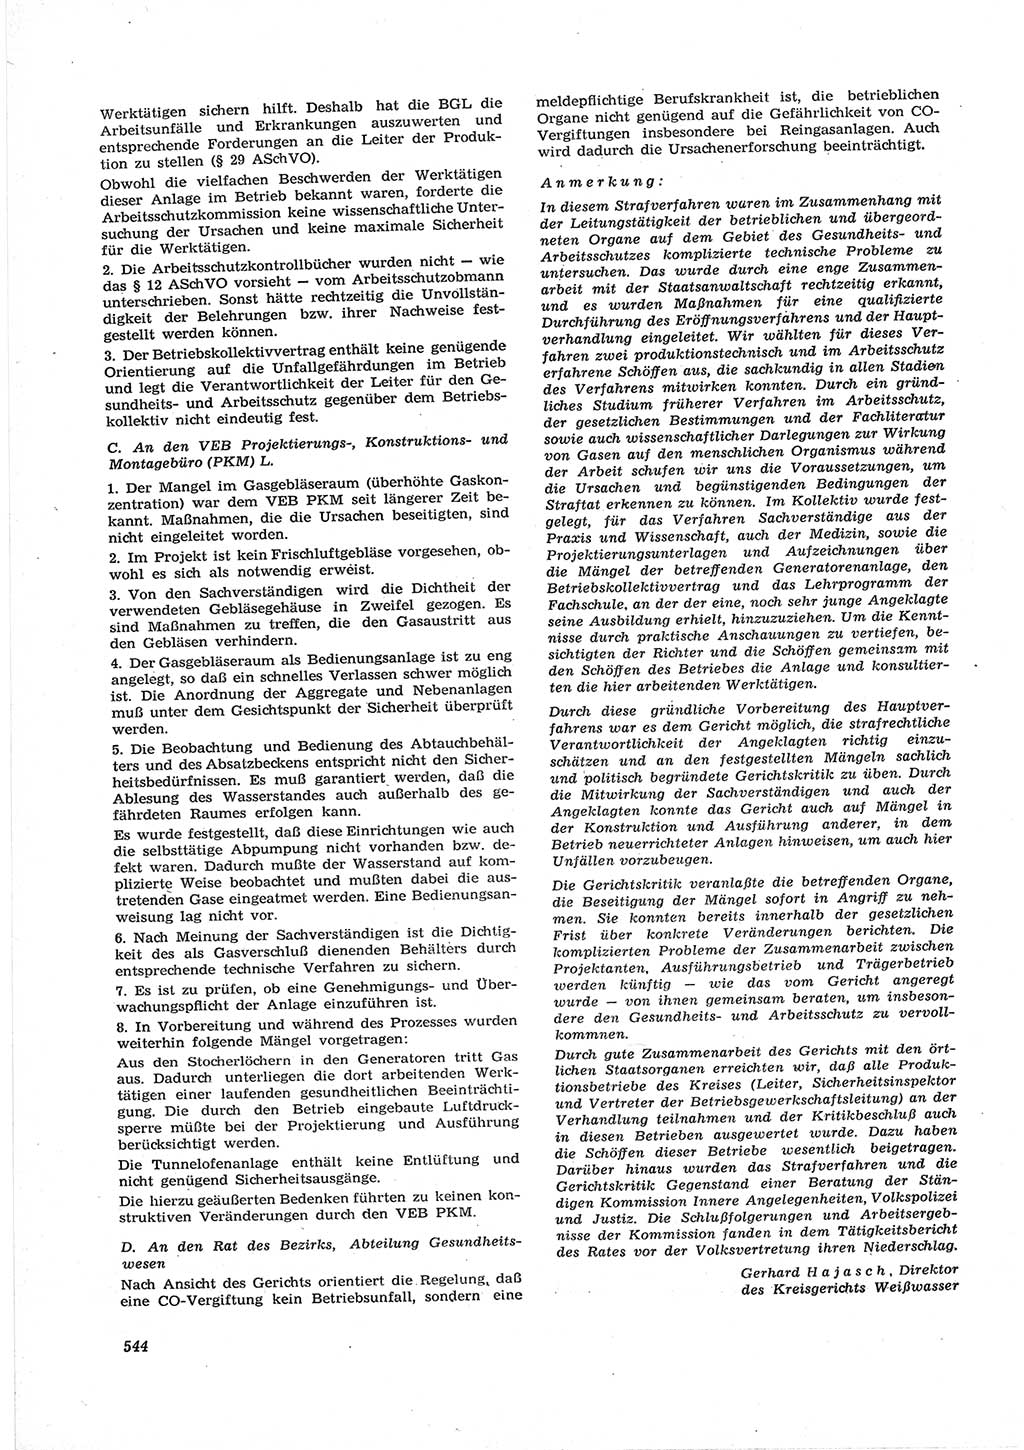 Neue Justiz (NJ), Zeitschrift für Recht und Rechtswissenschaft [Deutsche Demokratische Republik (DDR)], 17. Jahrgang 1963, Seite 544 (NJ DDR 1963, S. 544)